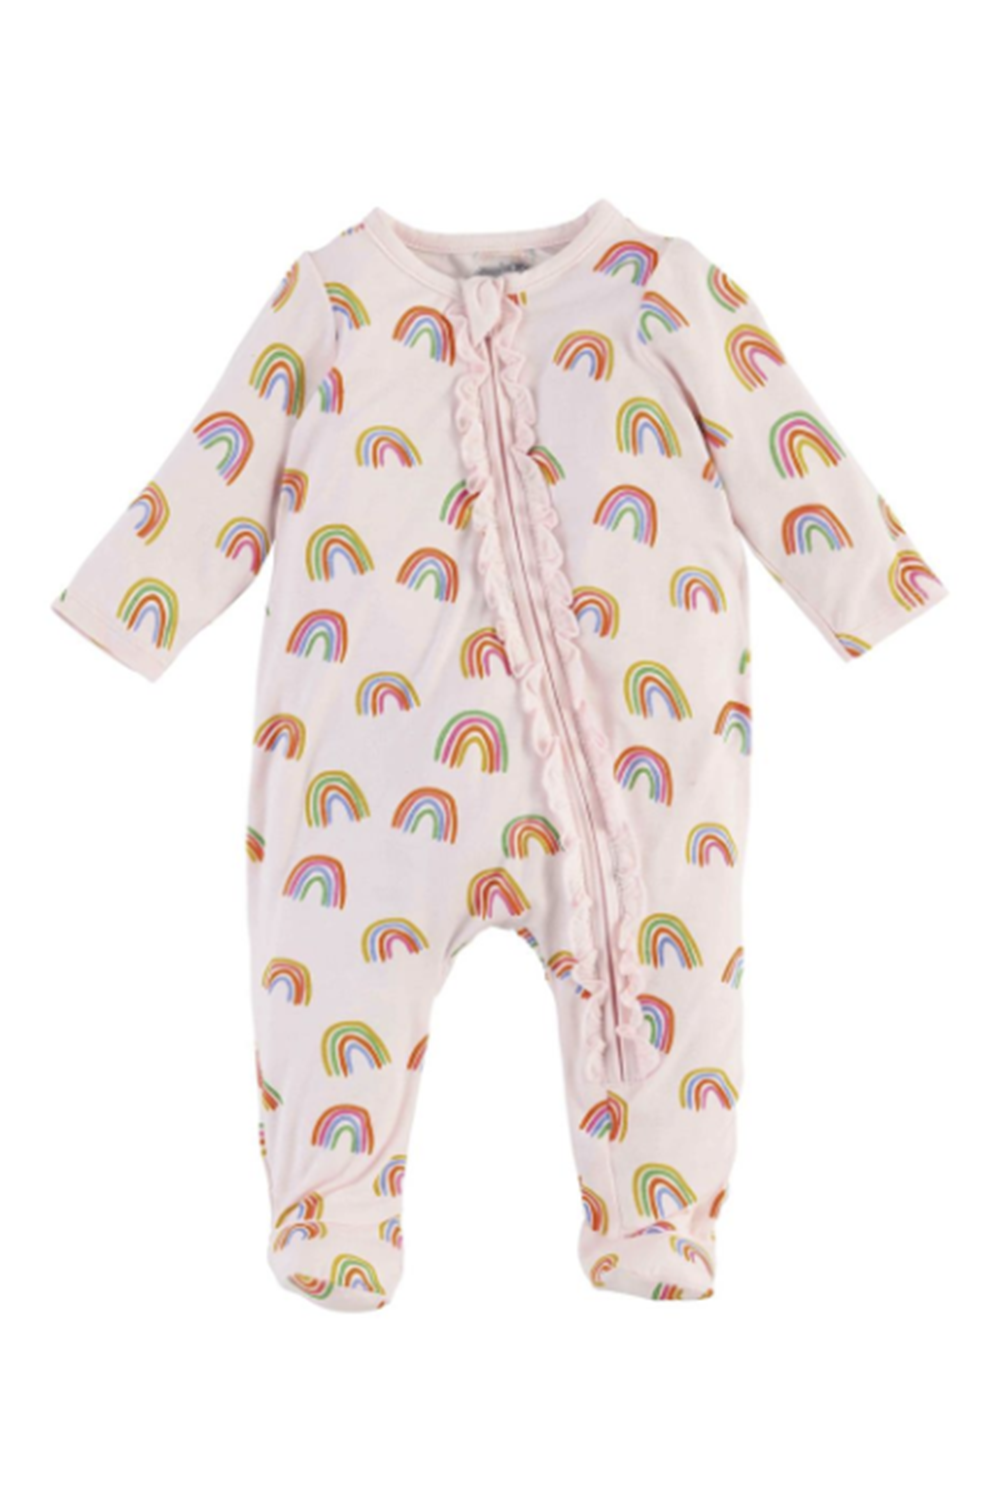 SIDEWALK SALE ITEM - Baby Sleeper Outfit - Rainbows